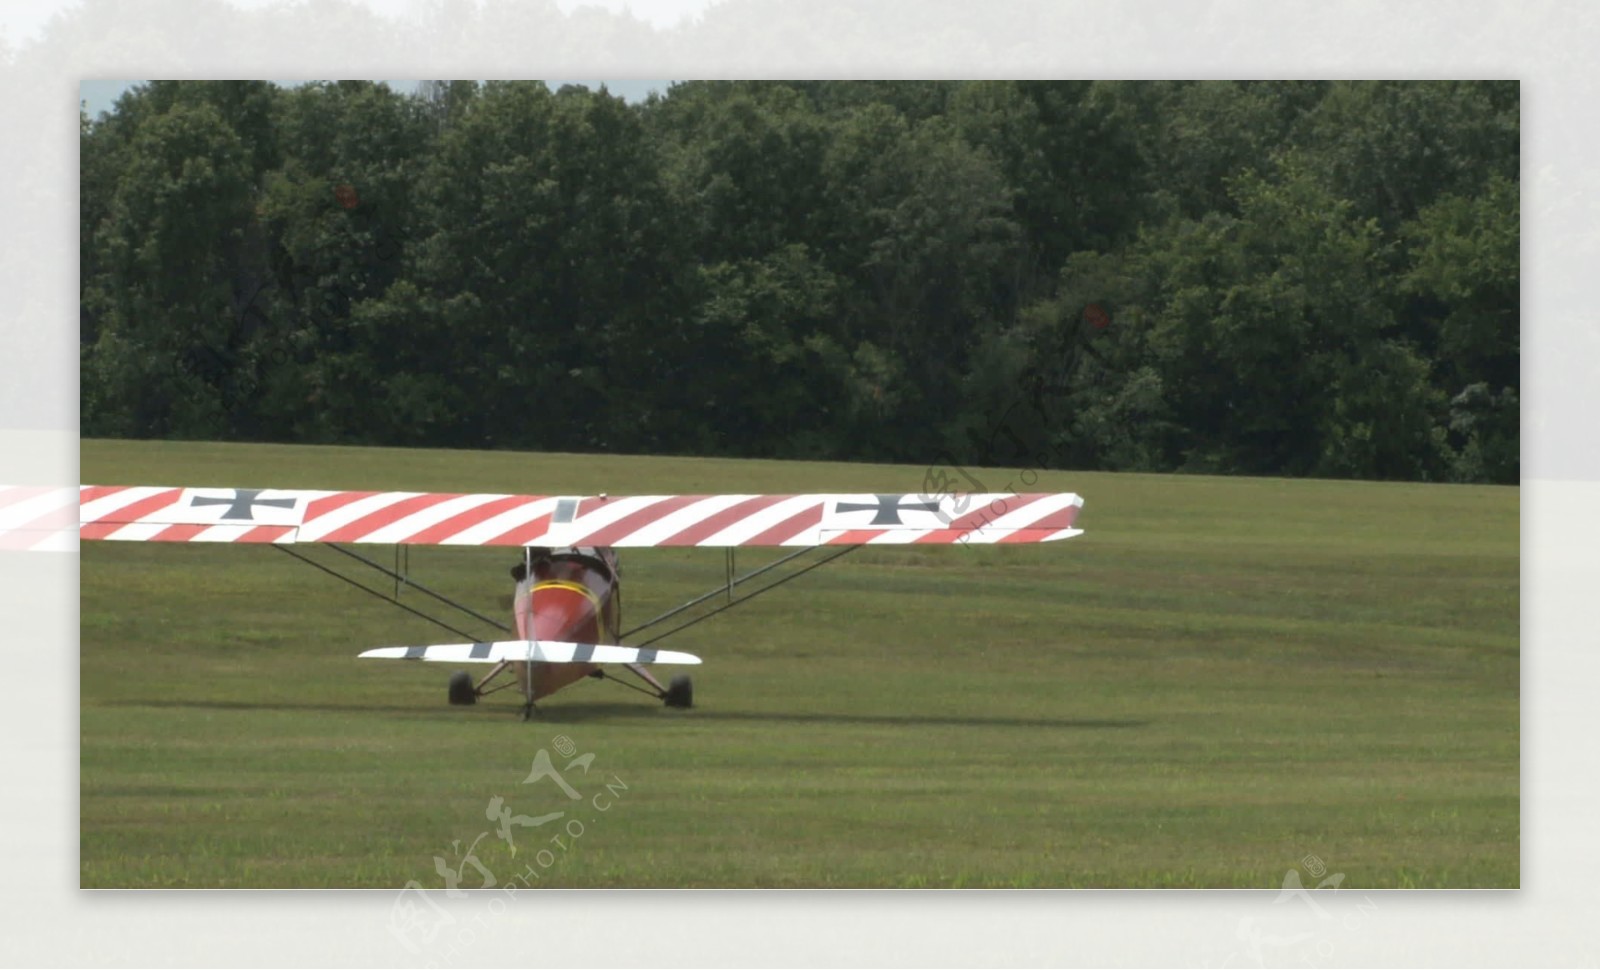 红色条纹的飞机滑行在草地场股票视频